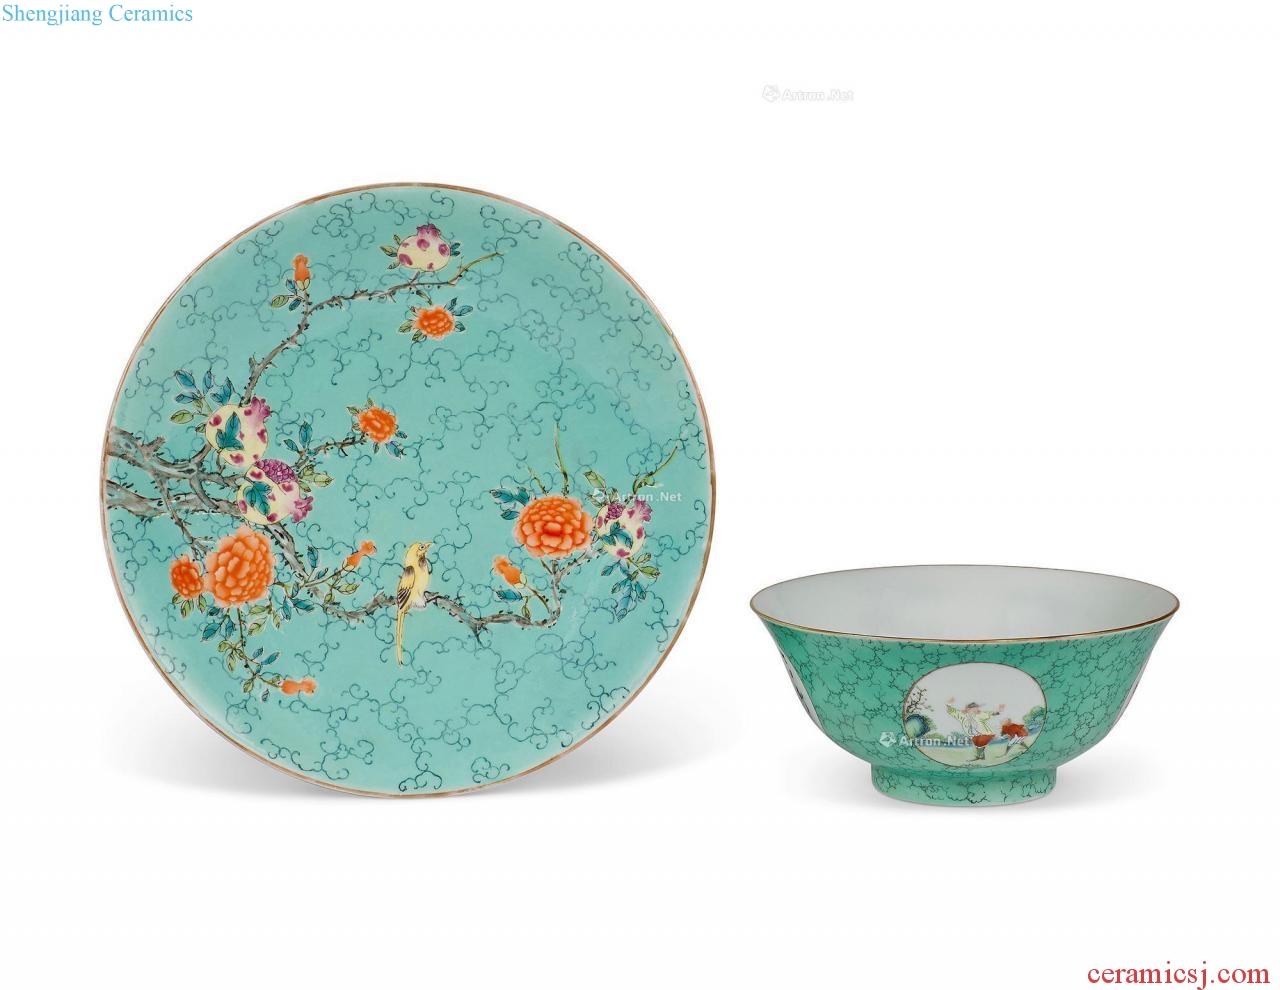 Pastel imitation qing 19/20 century turquoise glazed medallion character figure bowl